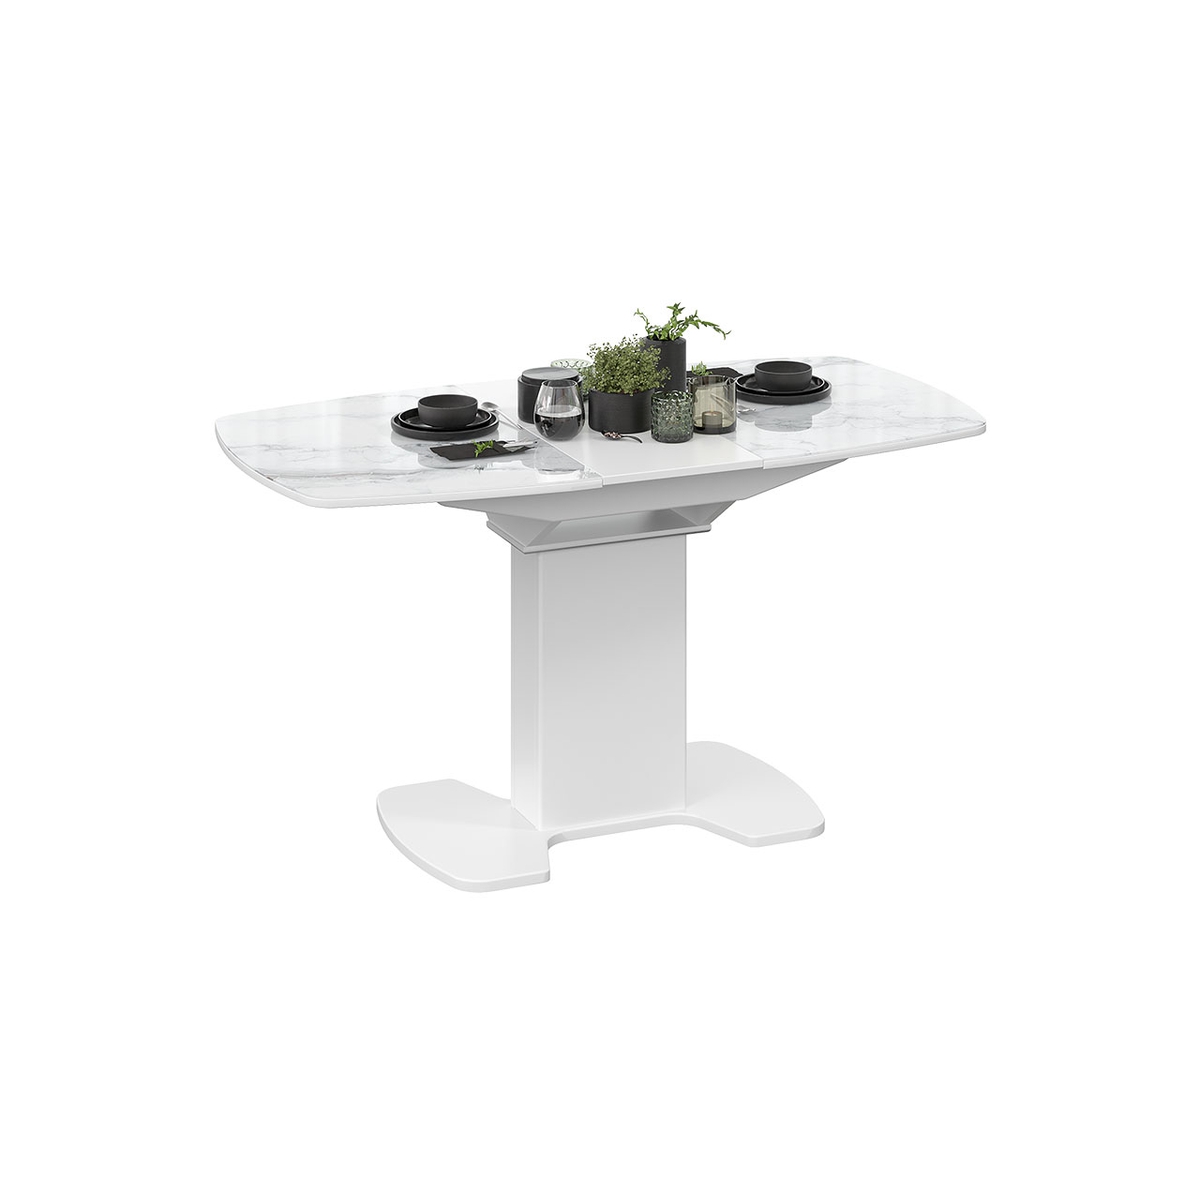 Портофино стол обеденный раздвижной со стеклом